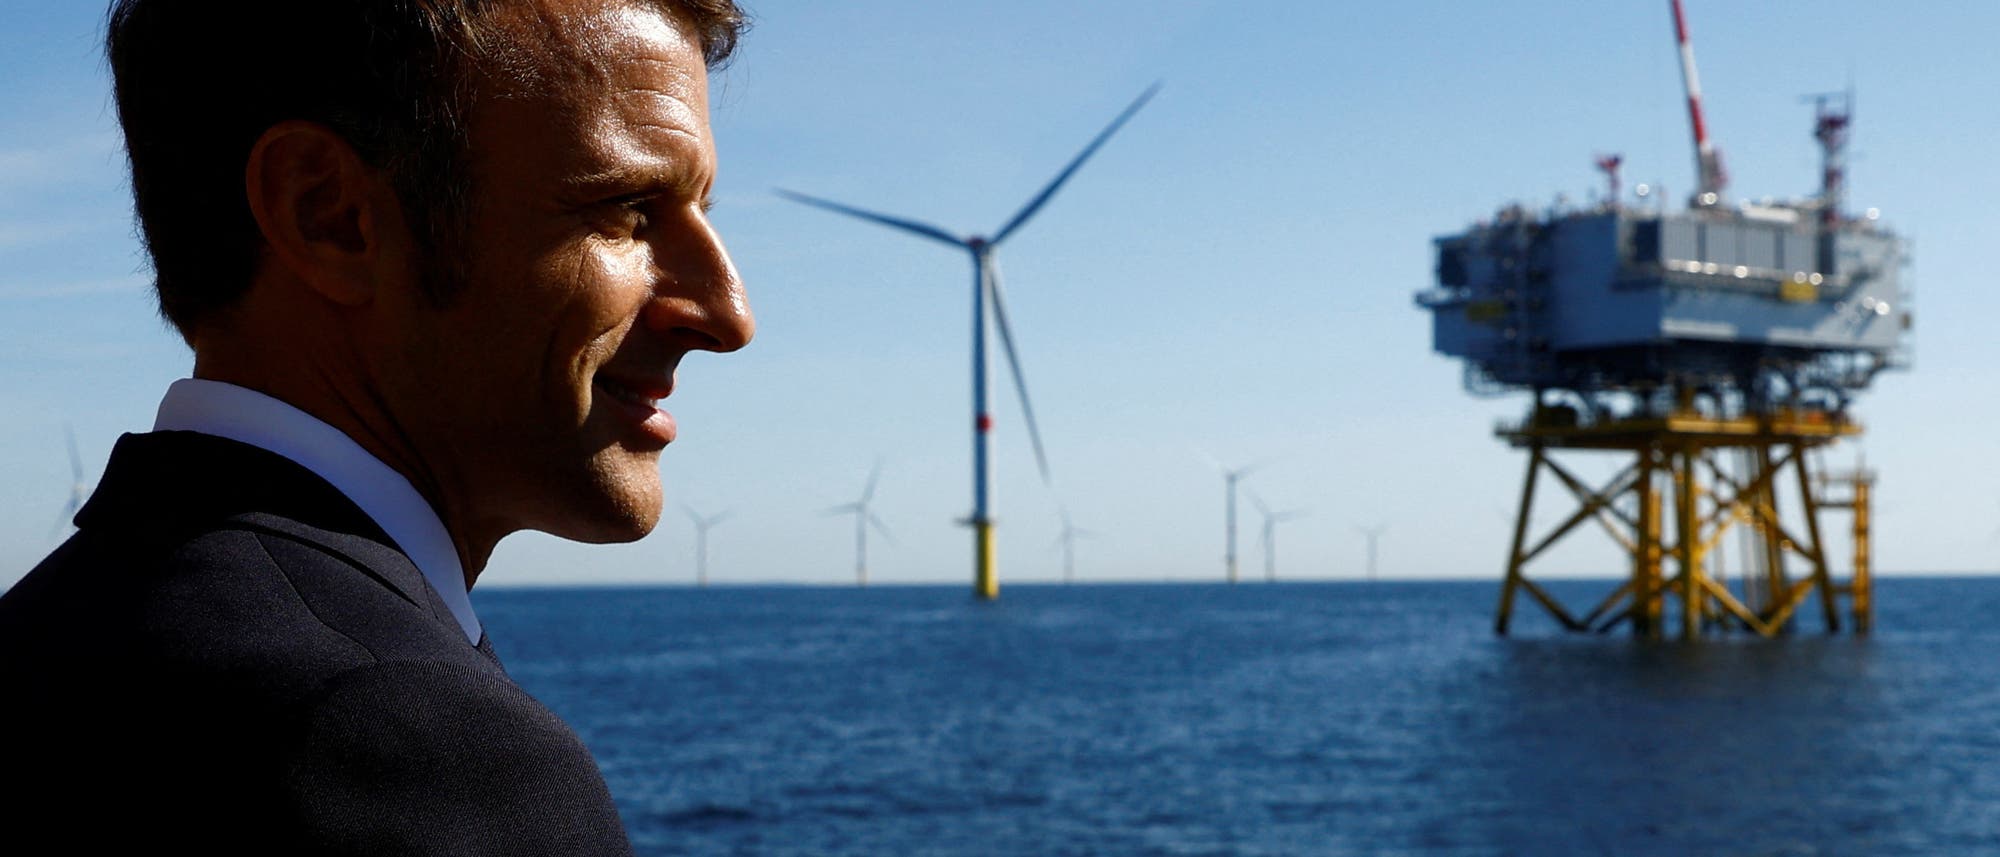 Der französische Präsident Emmanuel Macron bei der Eröffnung eines Windparks